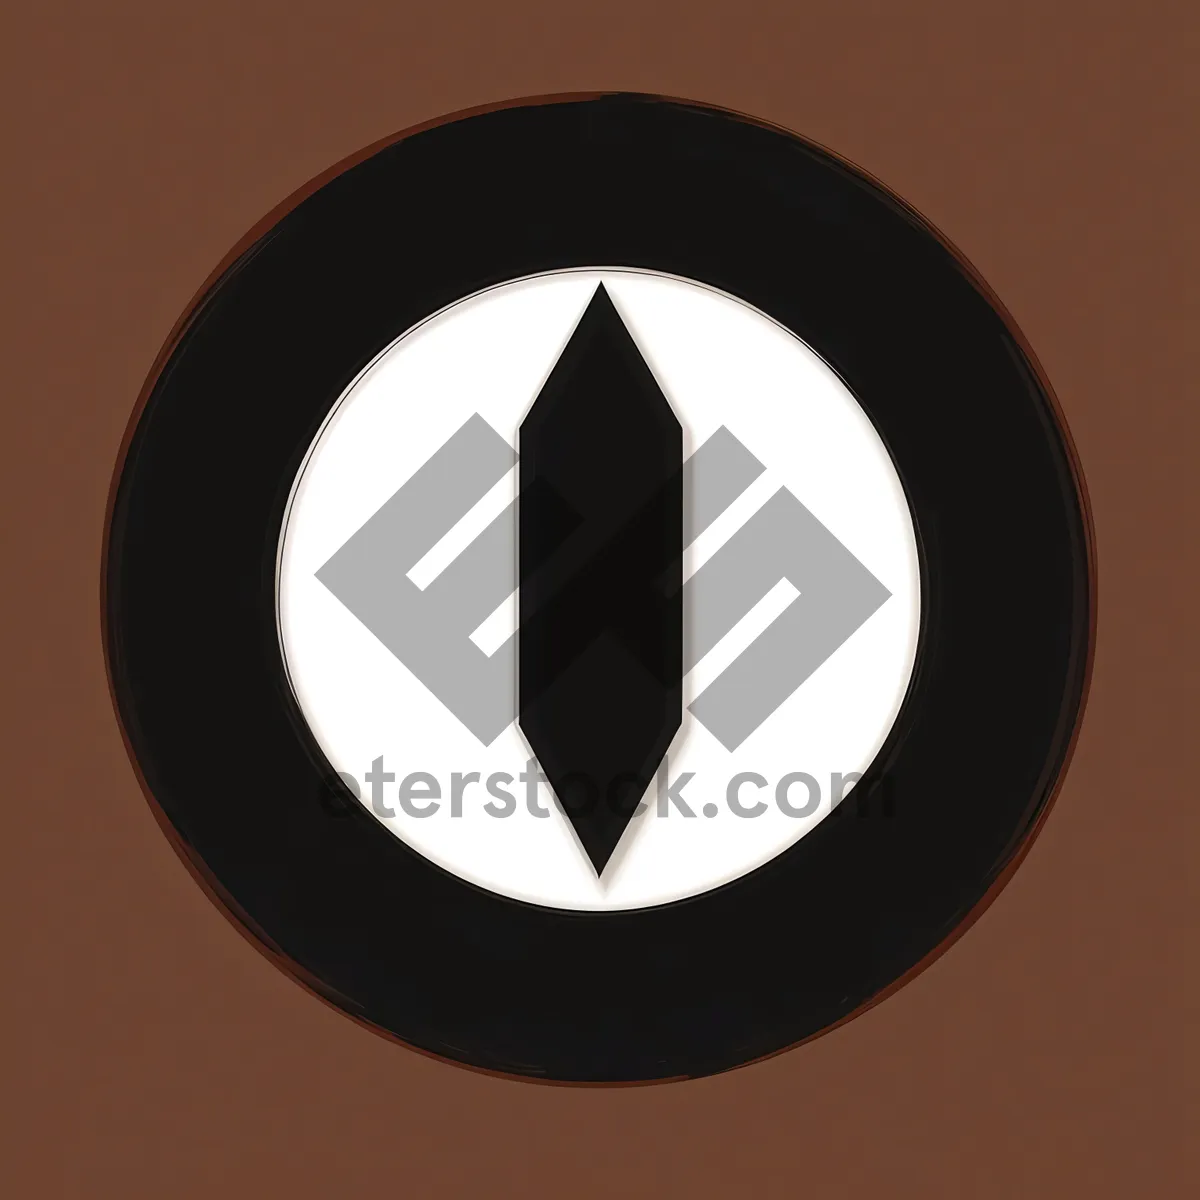 Shiny Black Round Metal Button Icon